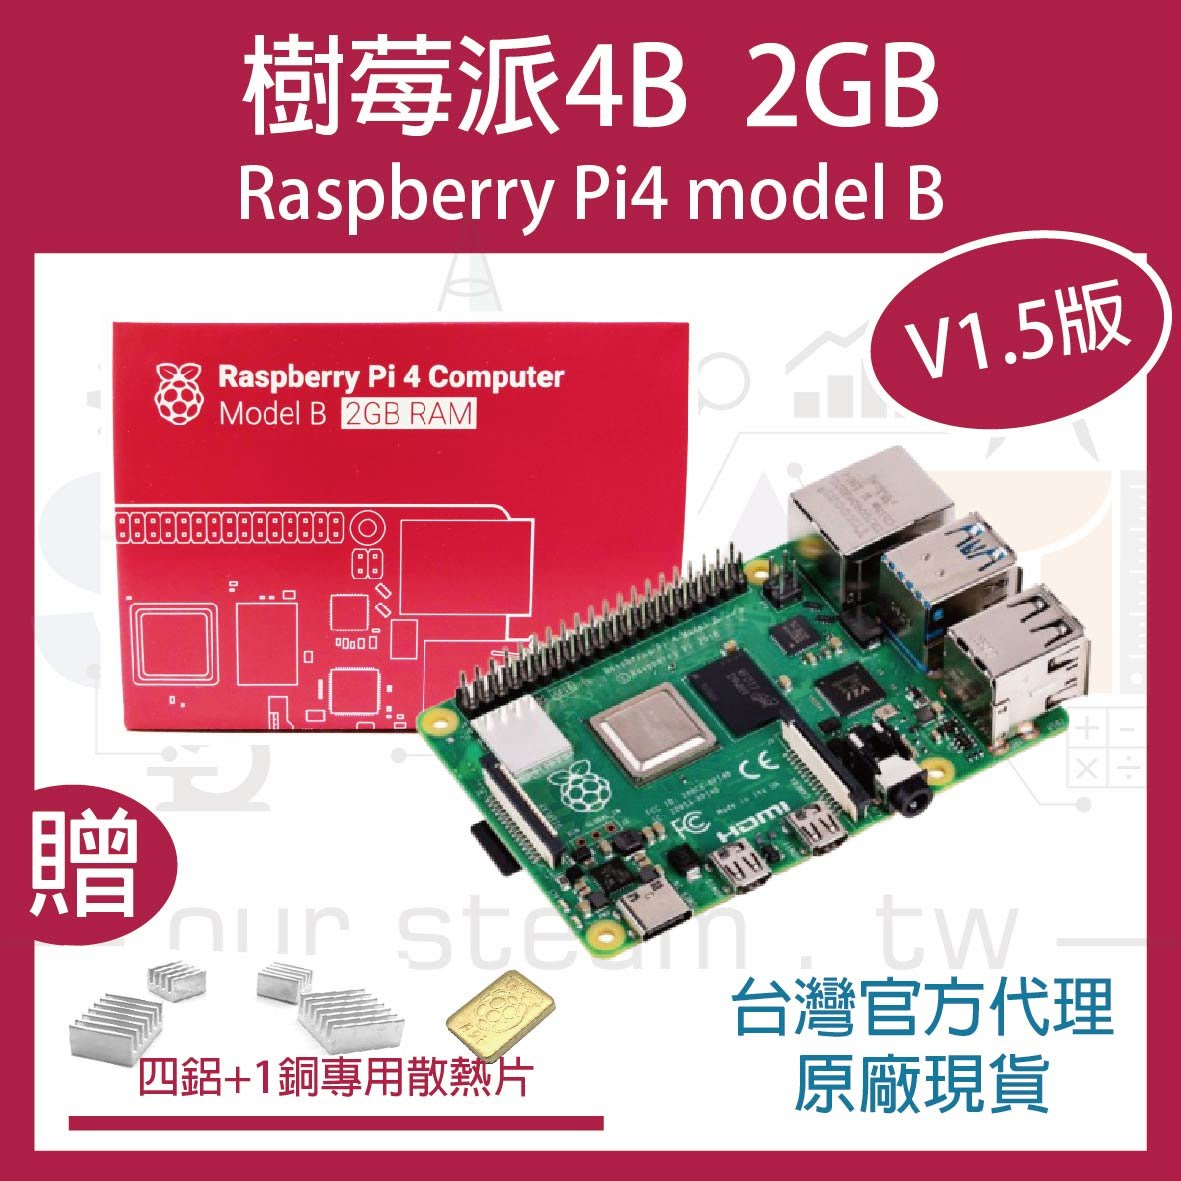 現貨送贈品】V1.5版樹莓派Raspberry Pi 4 Model B 2GB 現貨/英國製/NCC認證公司貨| Yahoo奇摩拍賣